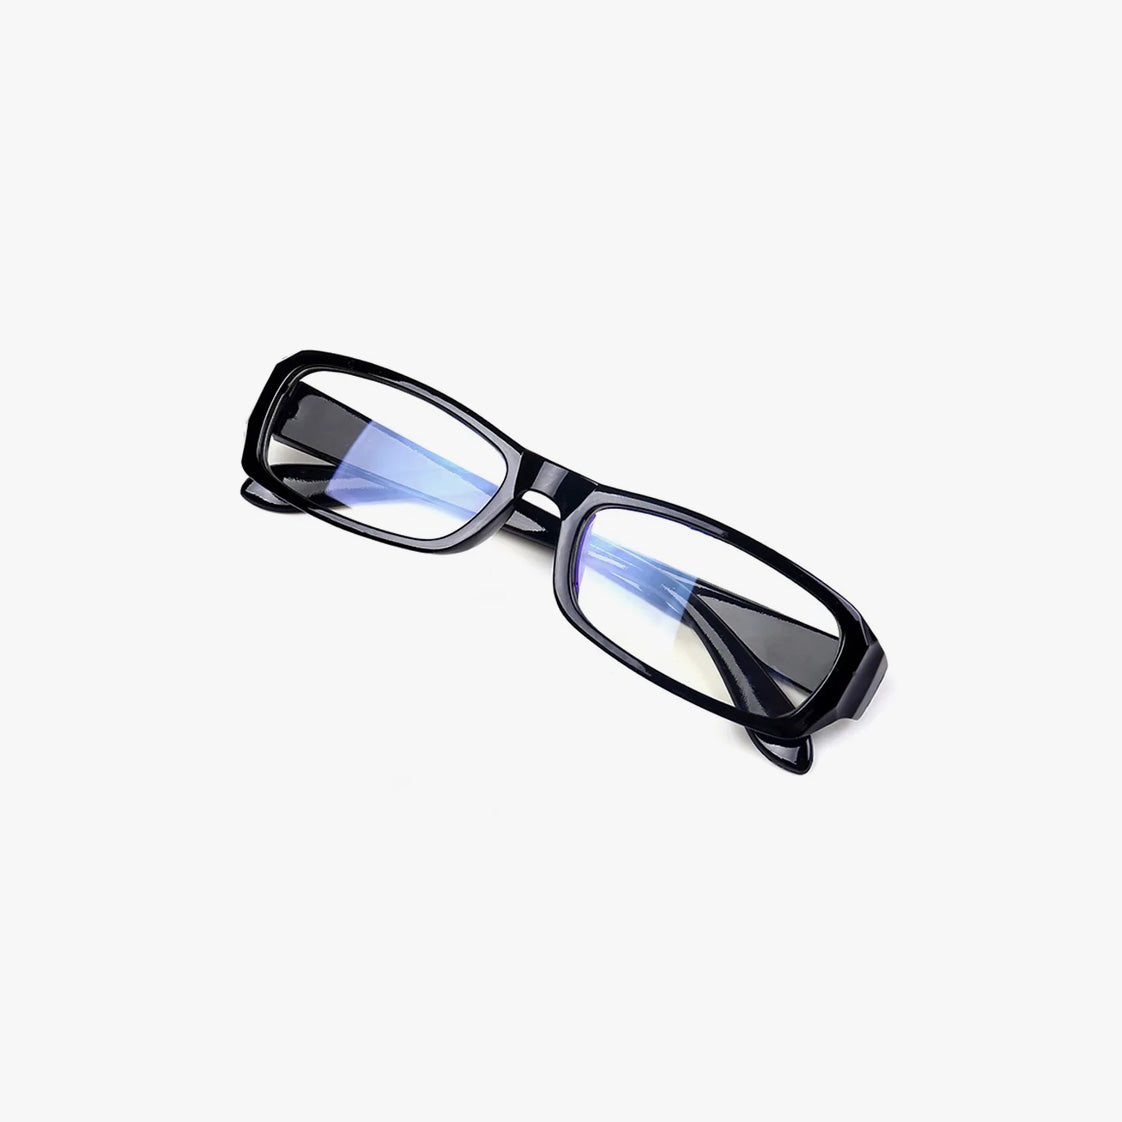 Office Siren Black Frame Eyeglasses